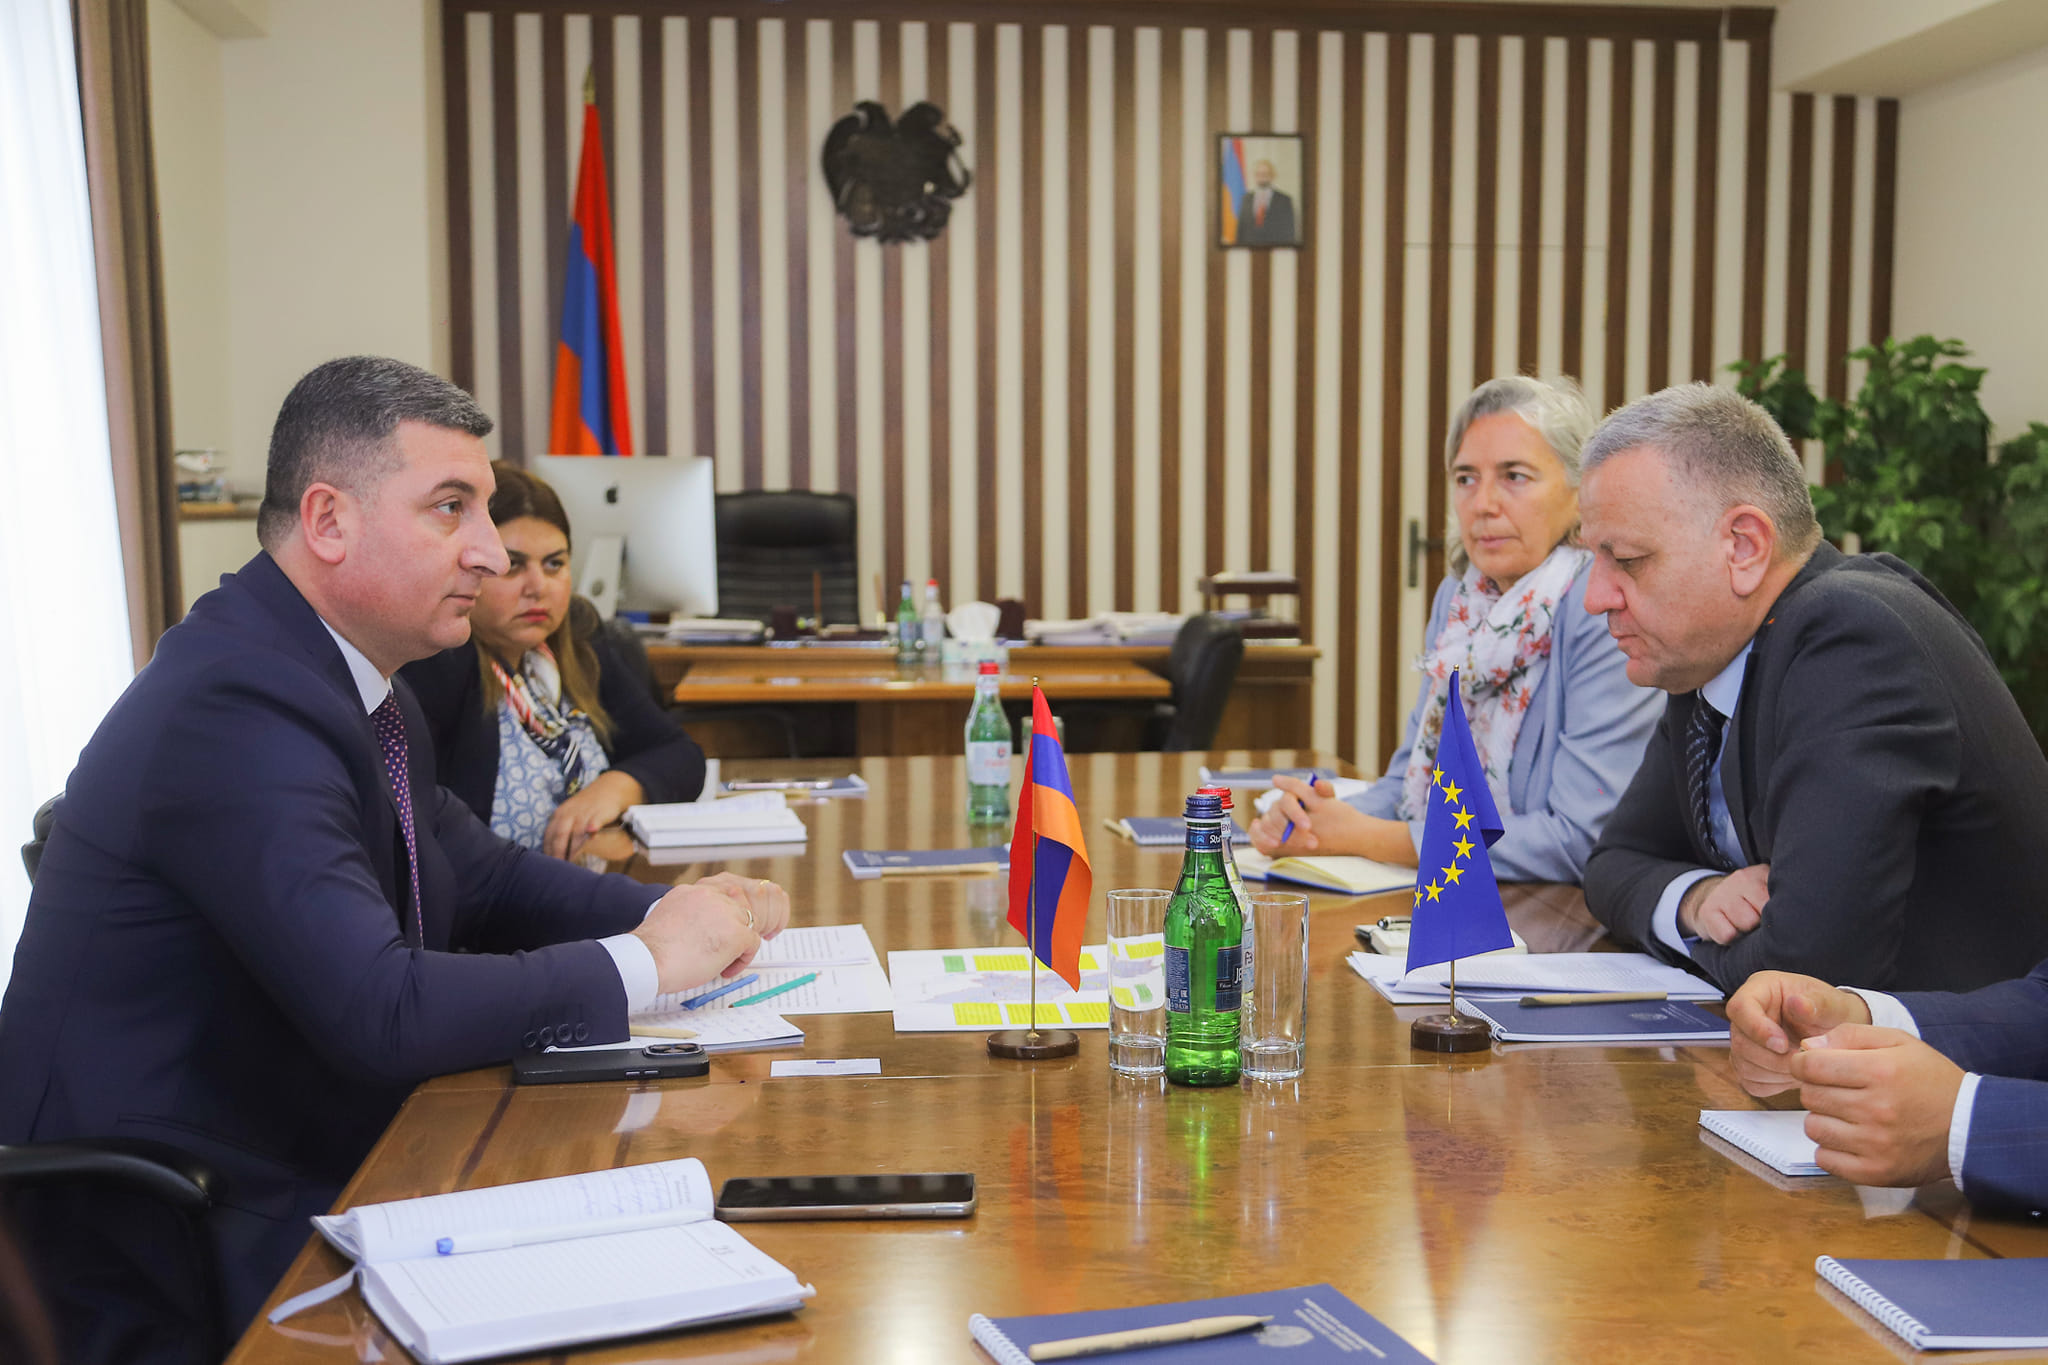 Սանոսյանը Մարագոսի հետ հանդիպմանը կարևորել է տարբեր ուղղություններով Հայաստան-ԵՄ համագործակցությունը